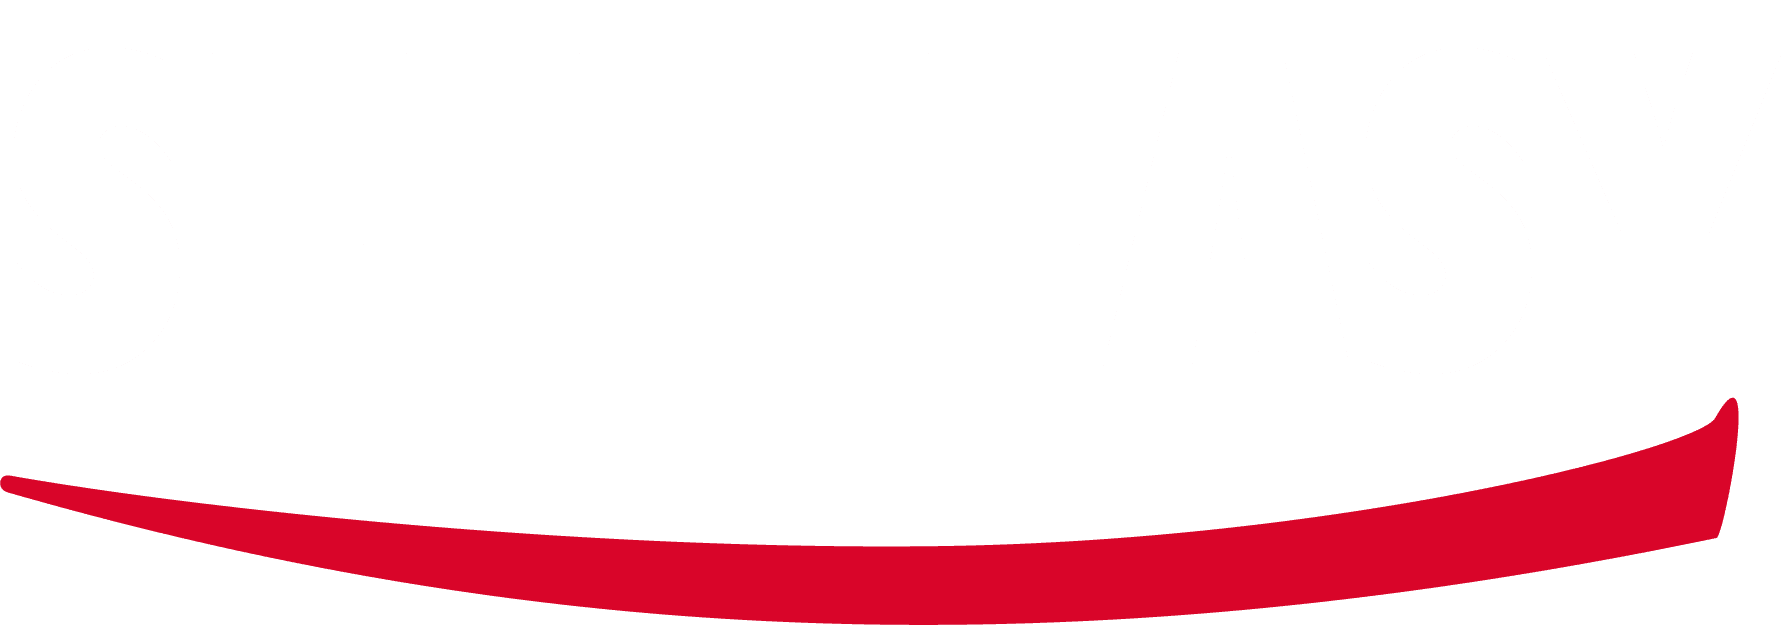 sell easy logo